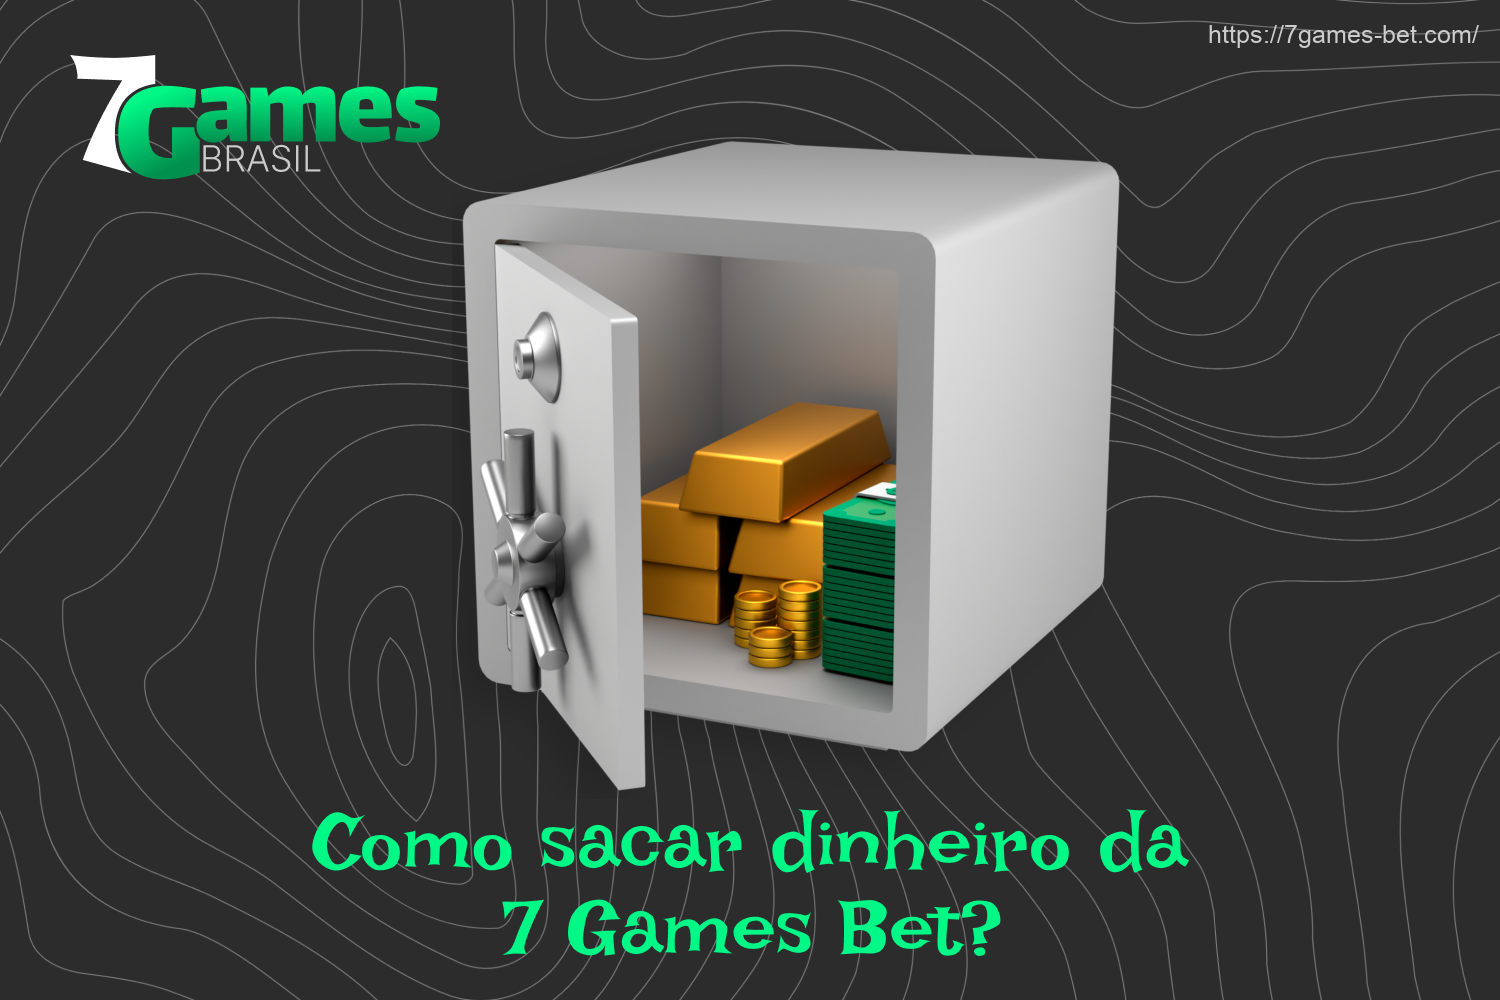 Quando os apostadores brasileiros atingirem o valor necessário para o saque da 7Games, eles poderão retirar seus ganhos